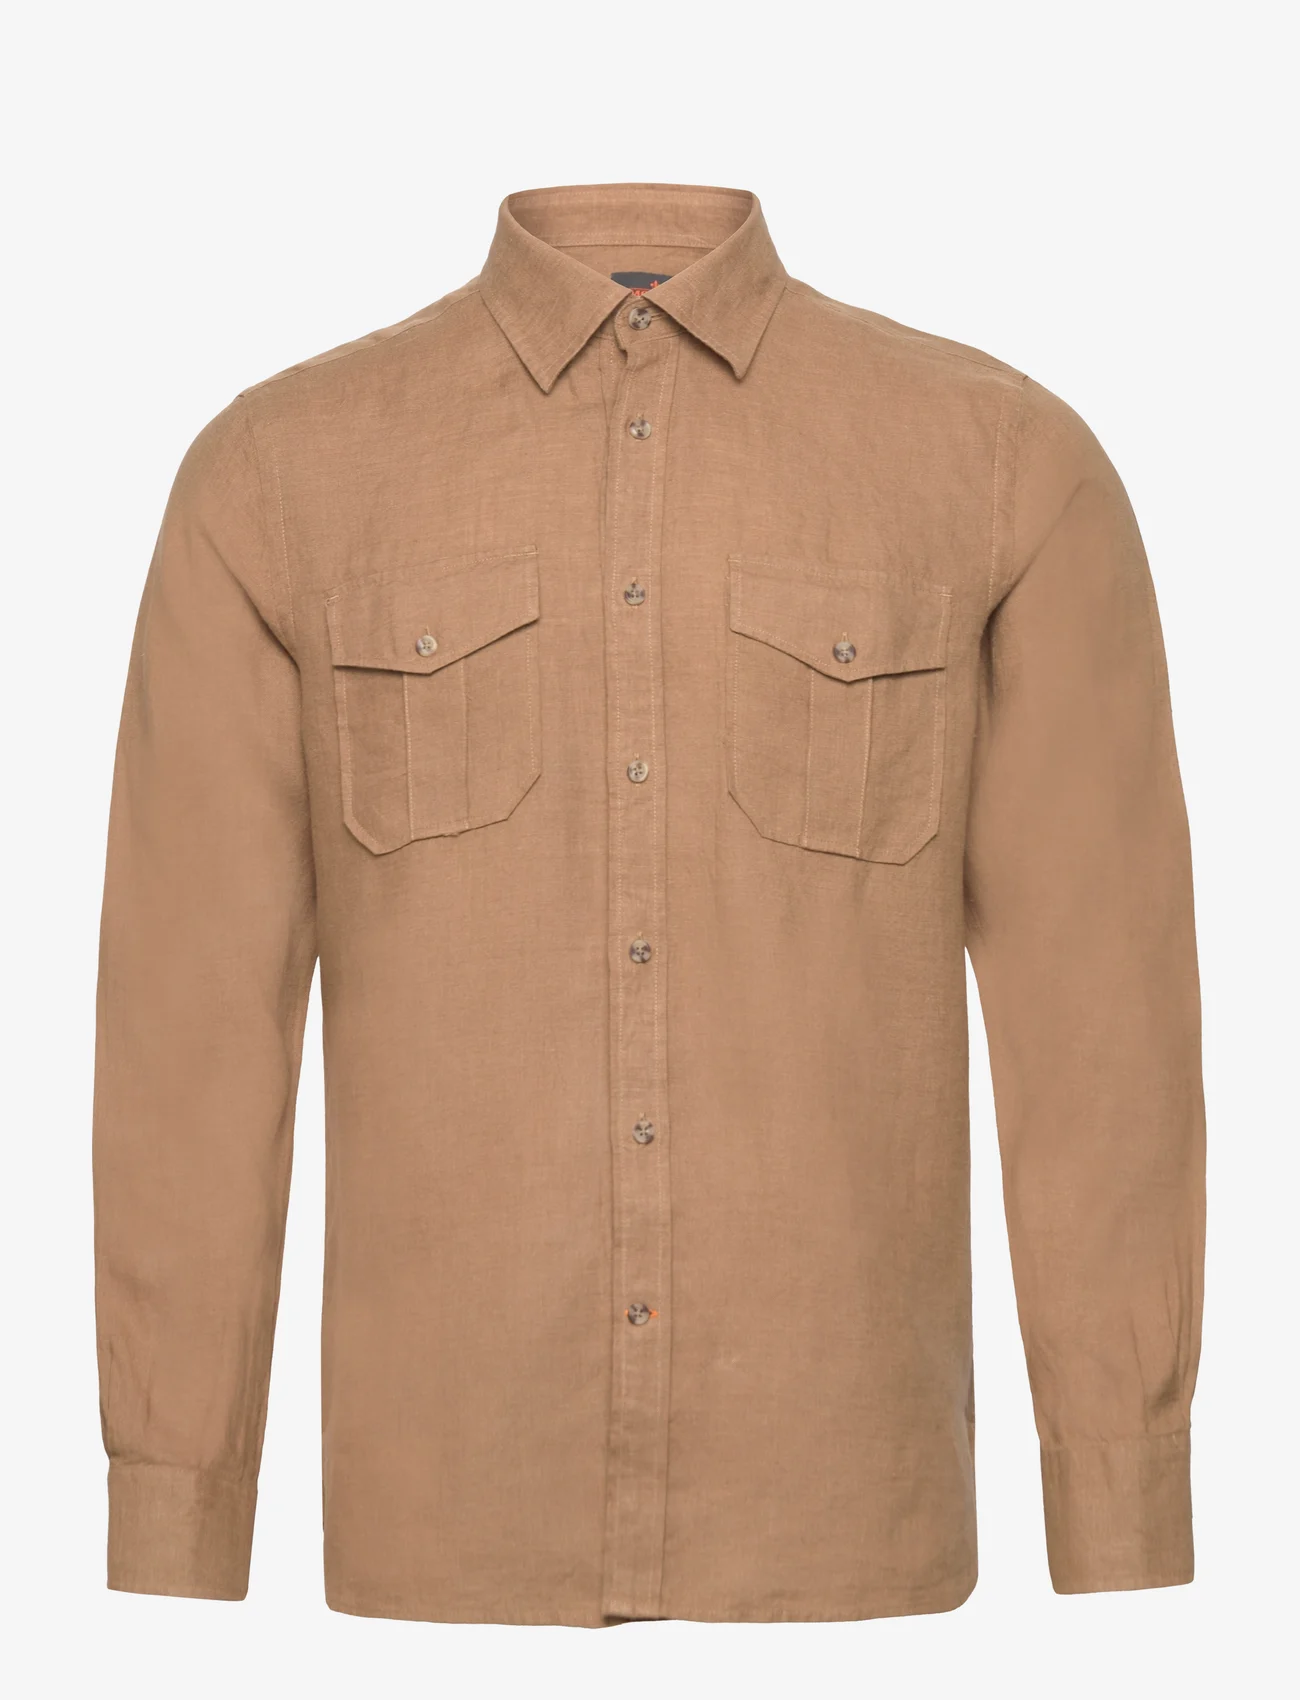 Morris - Safari Linen Shirt - hørskjorter - camel - 0